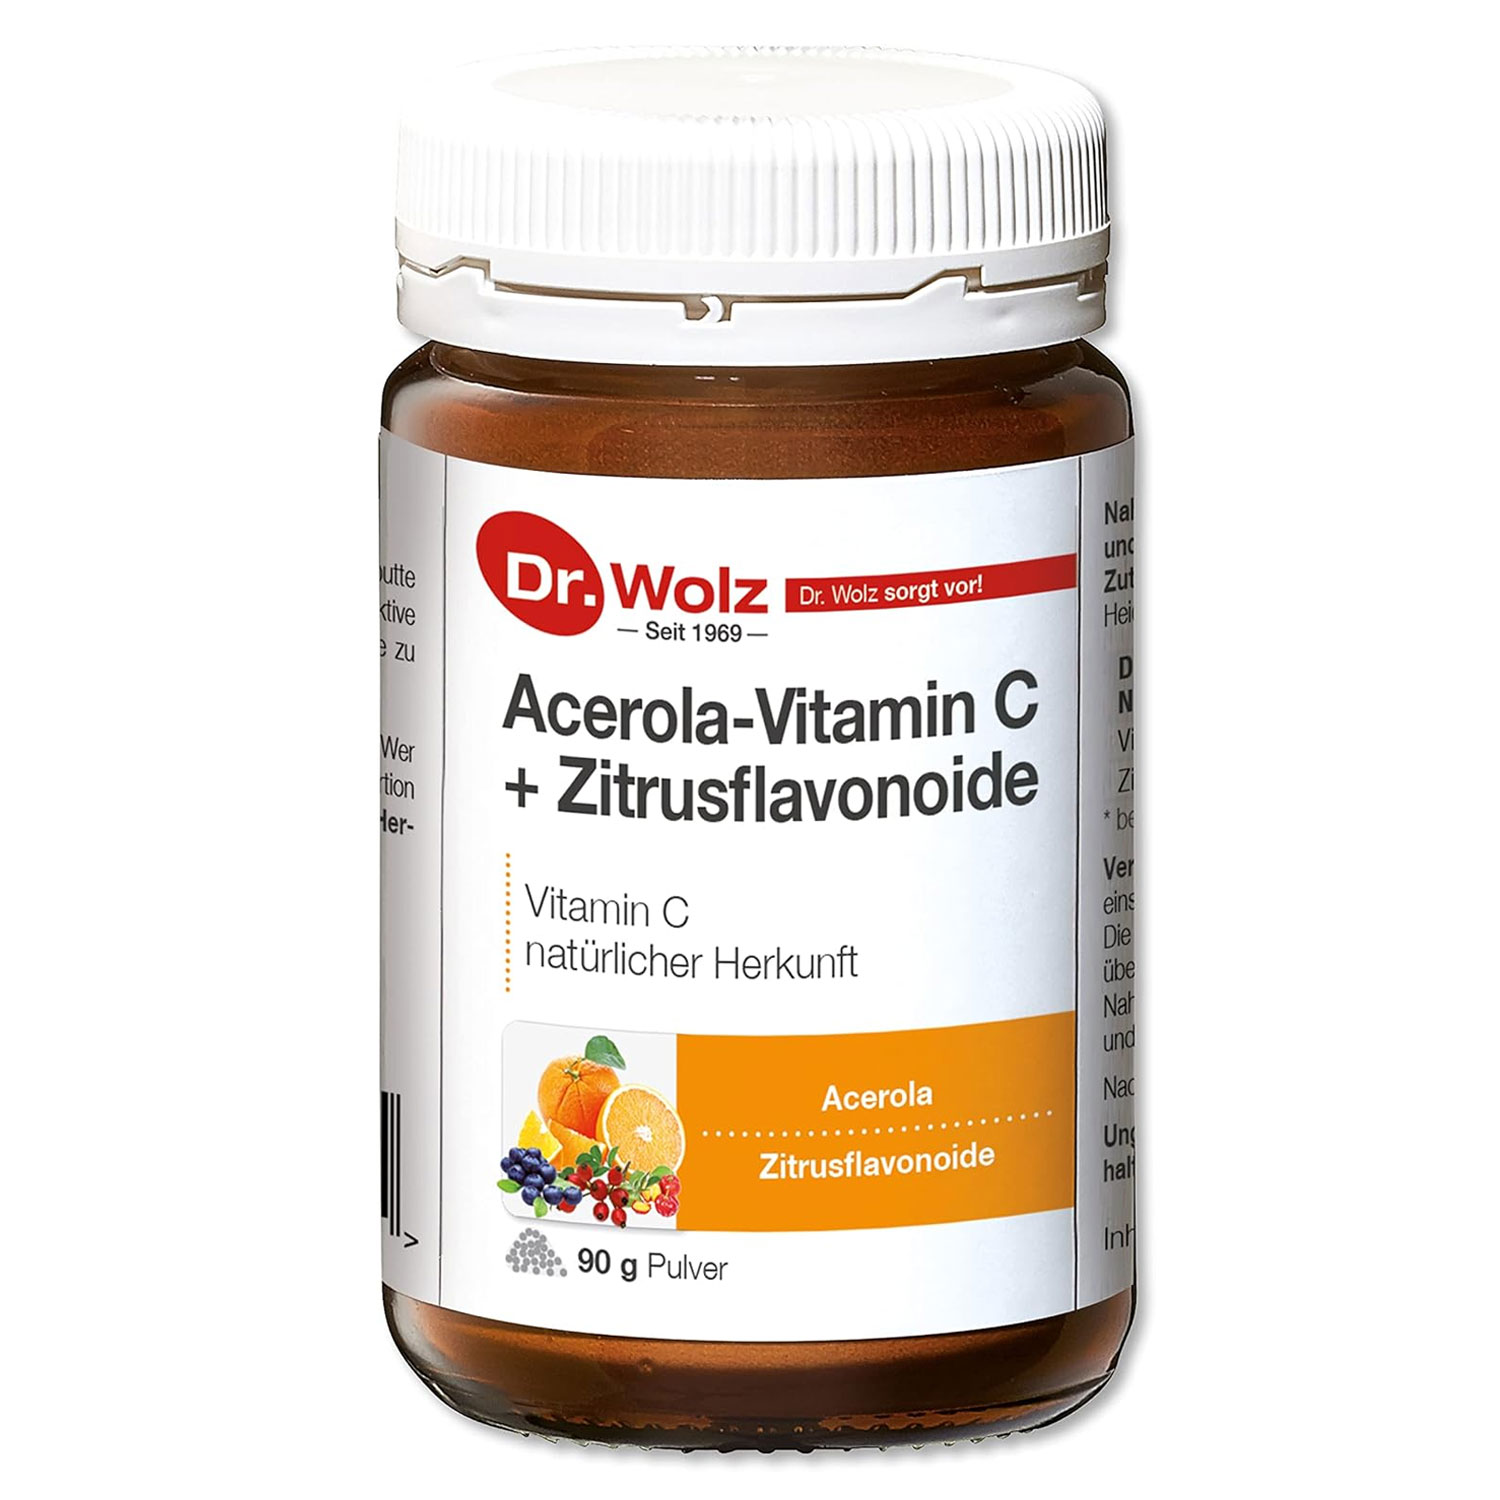  Acerola Vitamin C + Bioflavonoide  von Dr. Wolz - 90g